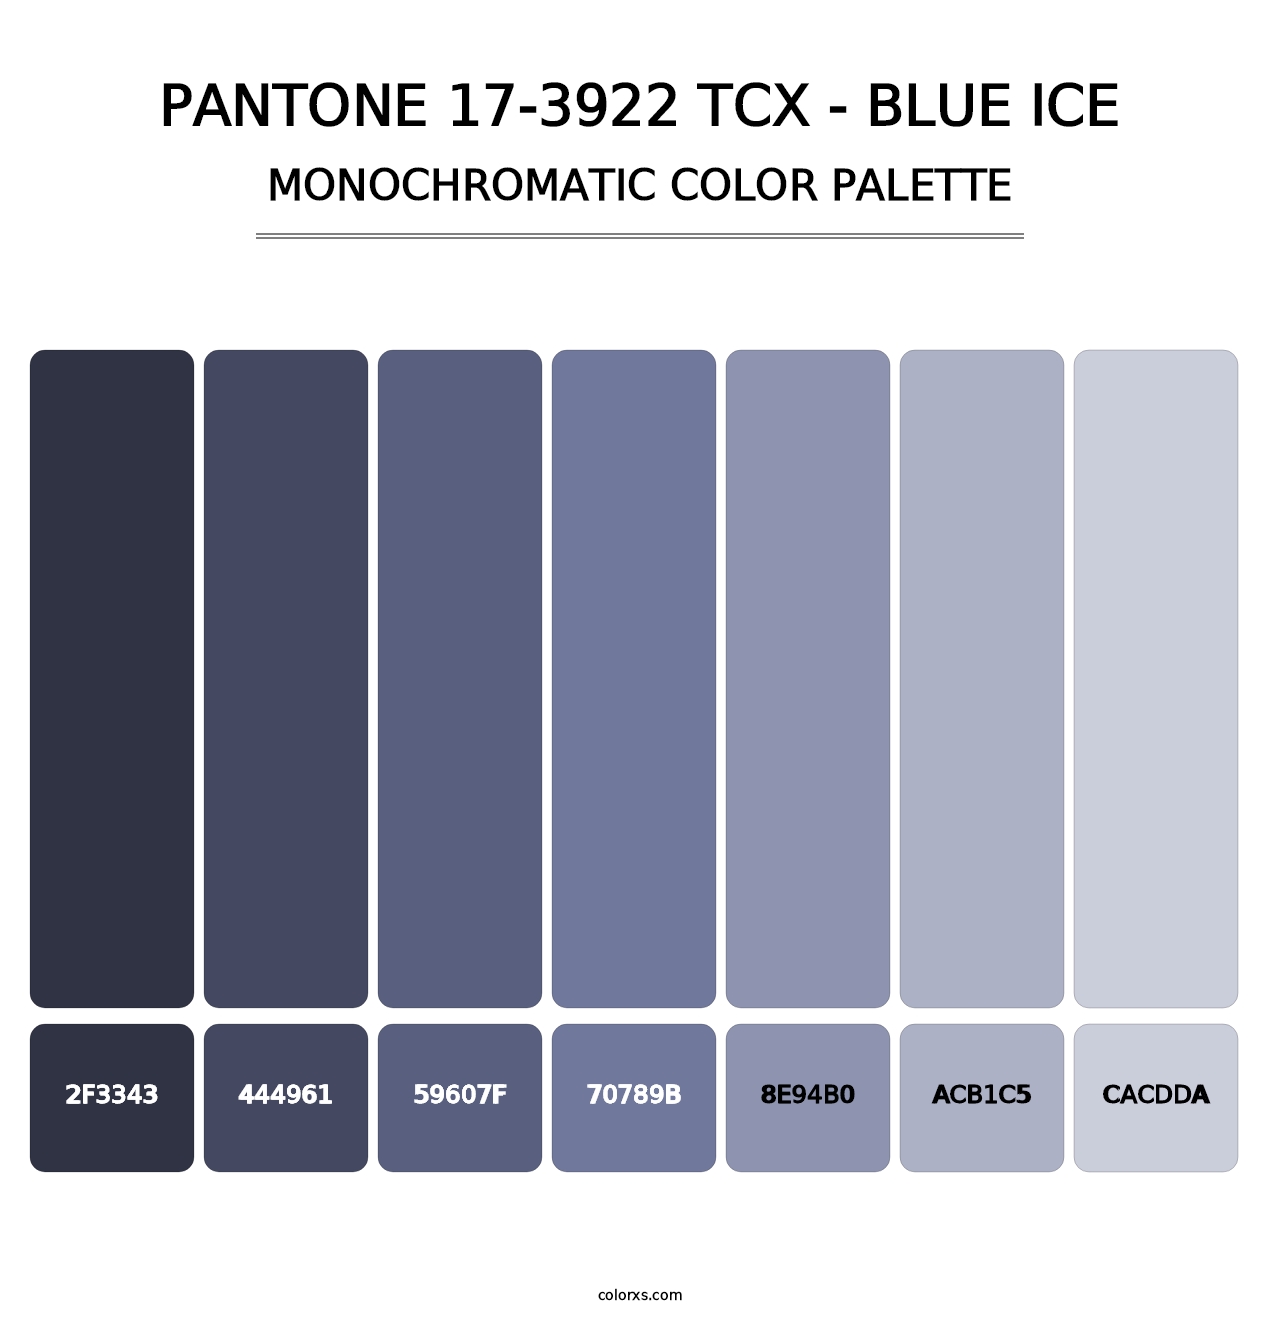 PANTONE 17-3922 TCX - Blue Ice - Monochromatic Color Palette